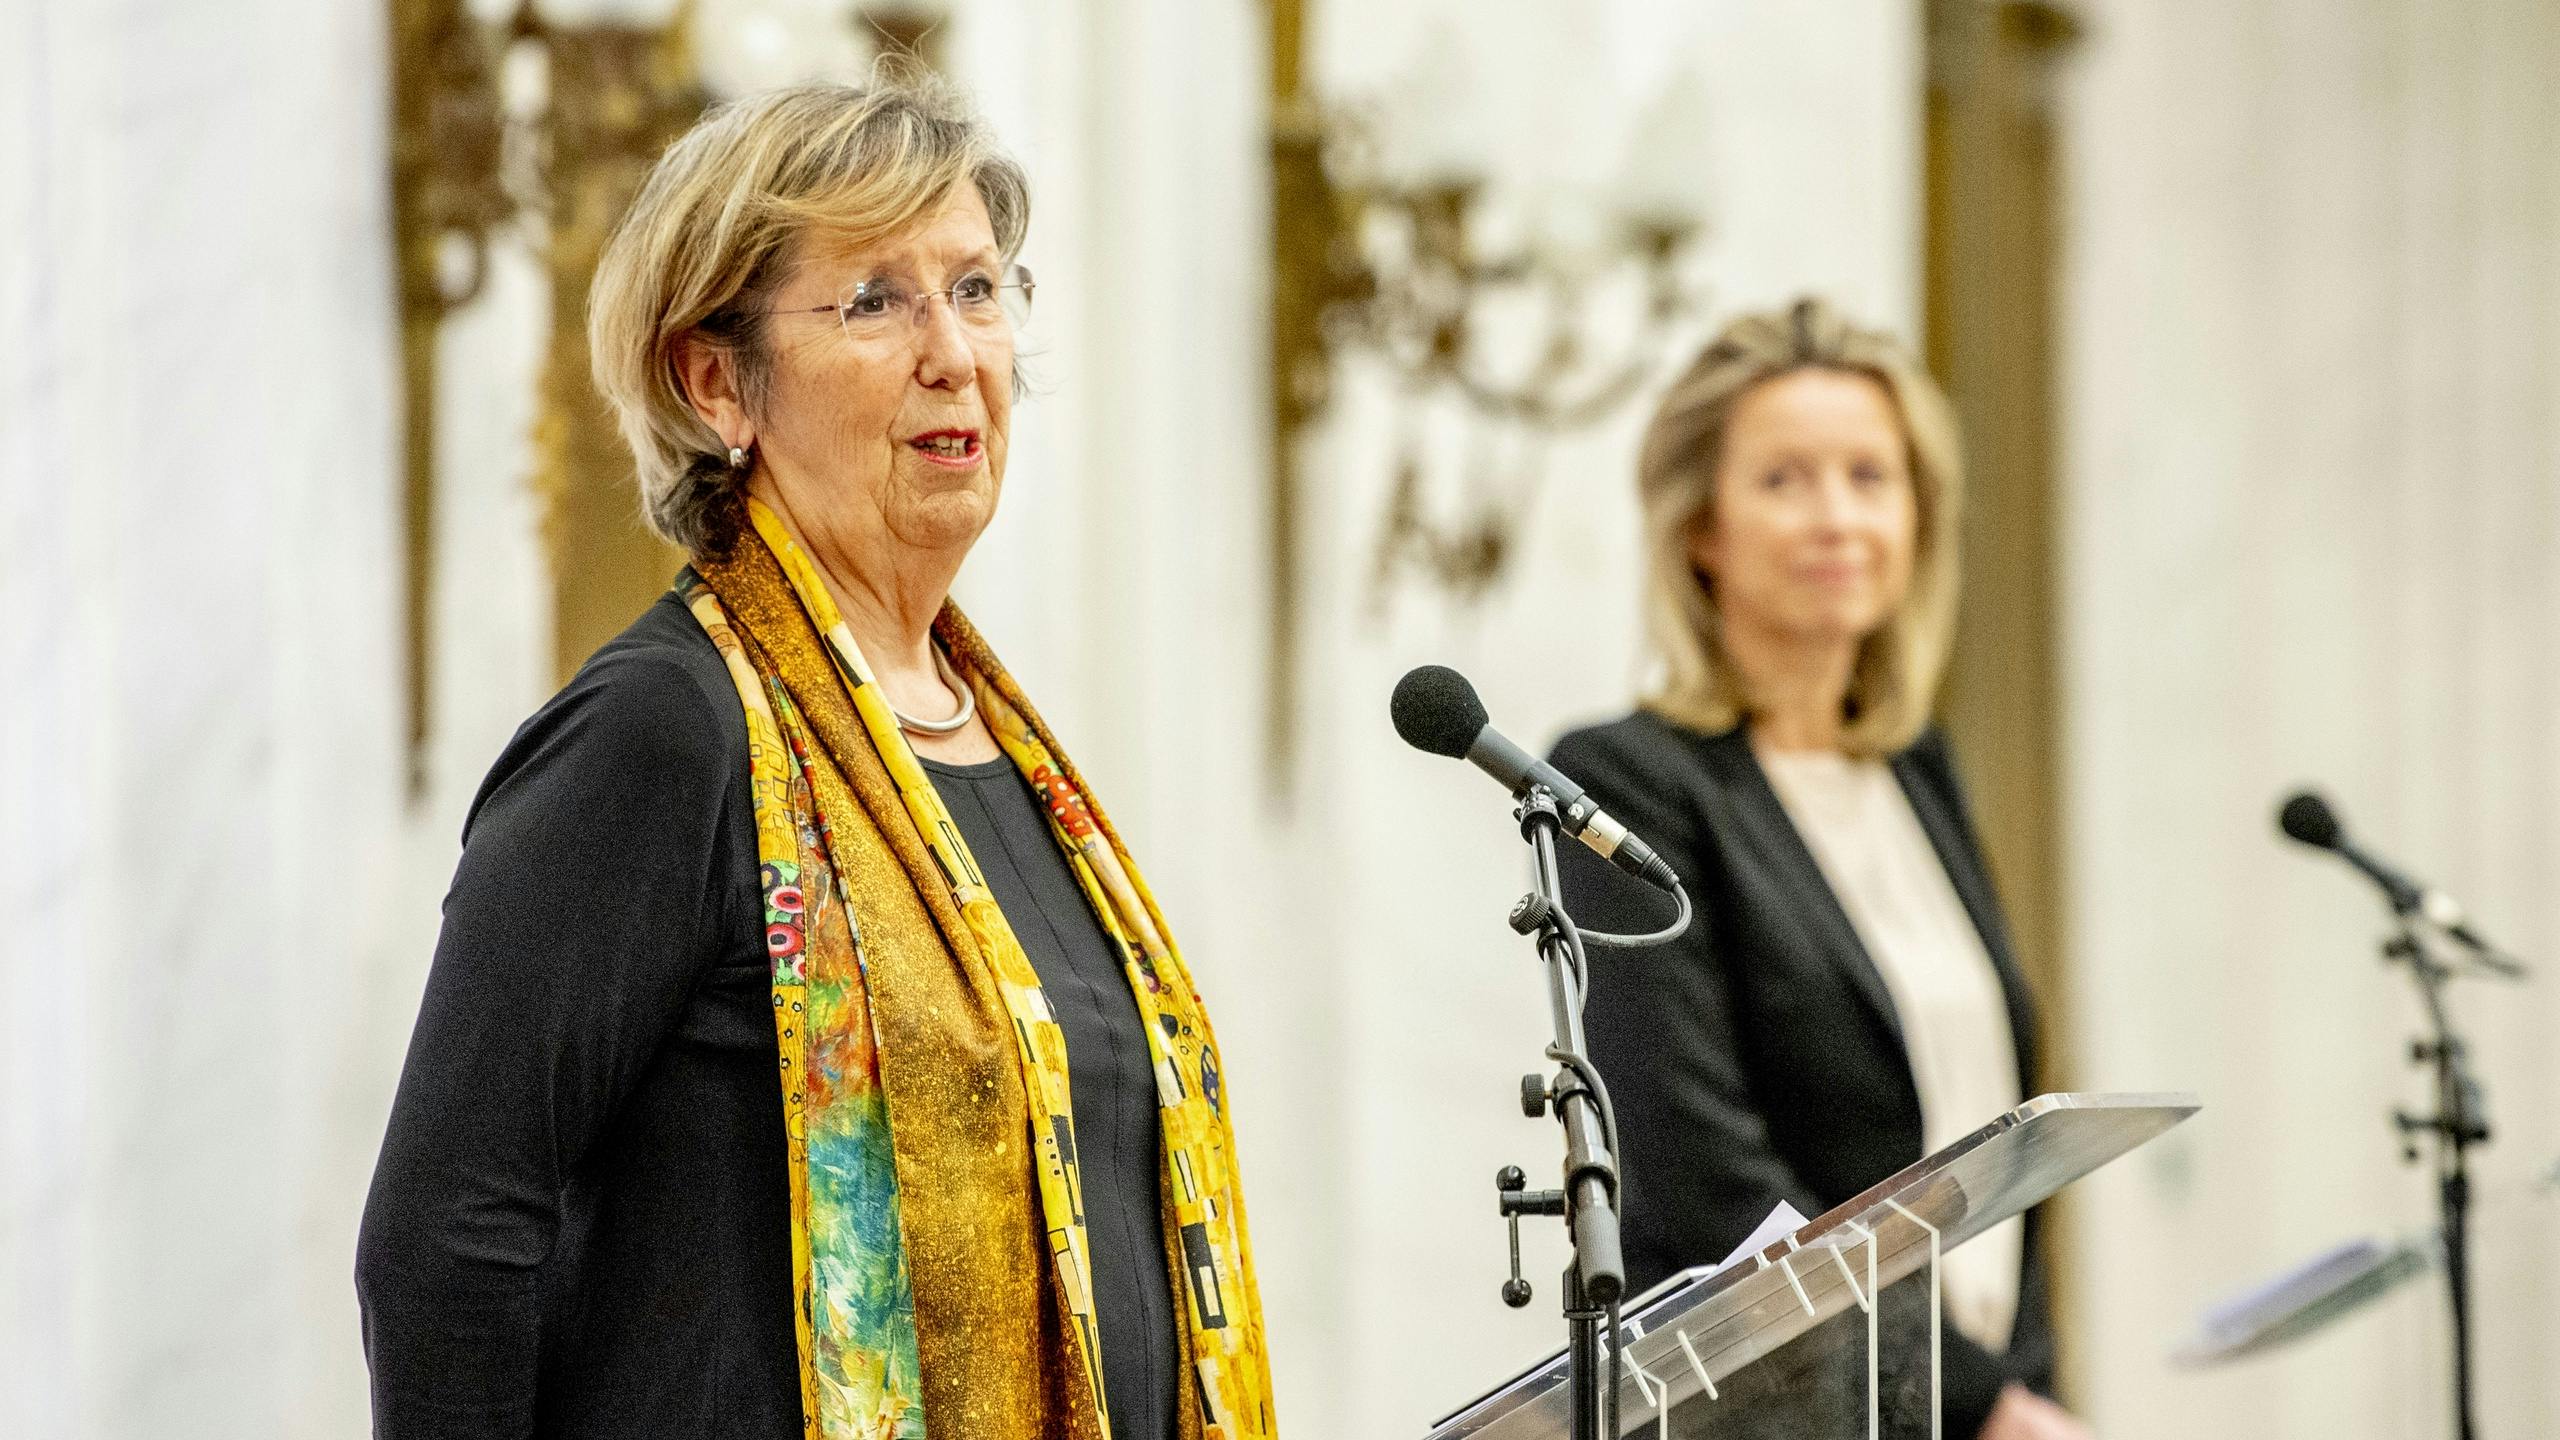 Oppositie wil debat over rol Annemarie Jorritsma en Kajsa Ollongren 